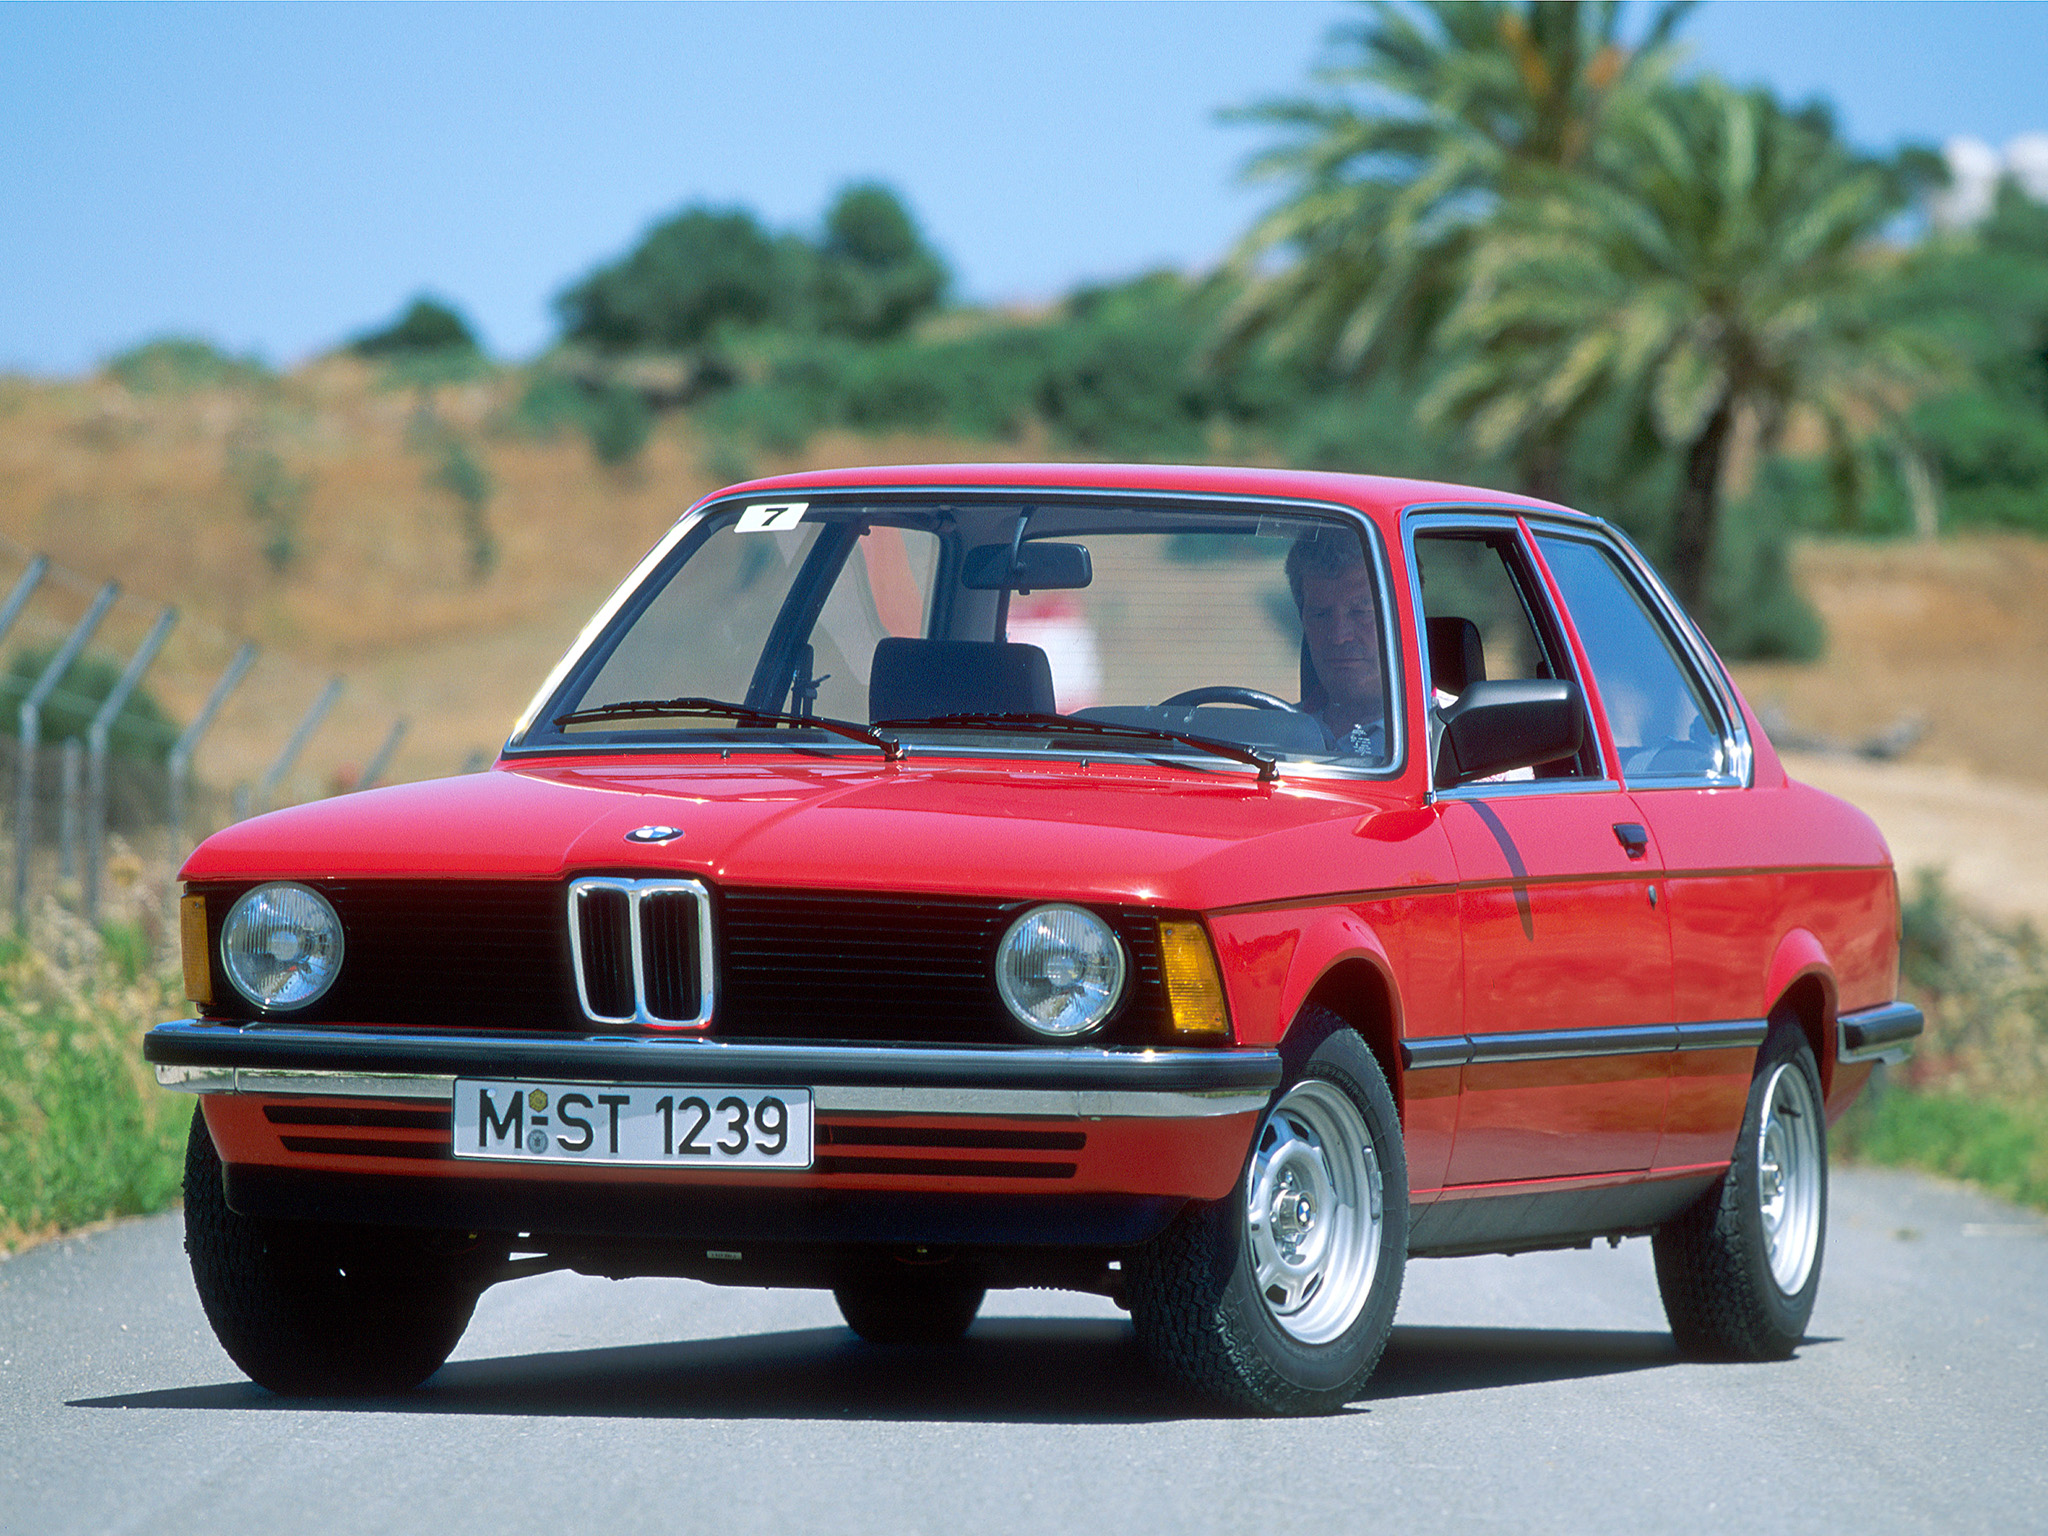 BMW 316 Coupe (E21) '1975â€“82. Ð¥Ð°Ñ€Ð°ÐºÑ‚ÐµÑ€Ð¸ÑÑ‚Ð¸ÐºÐ¸ Ð¸Ð·Ð¾Ð±Ñ€Ð°Ð¶ÐµÐ½Ð¸Ñ: